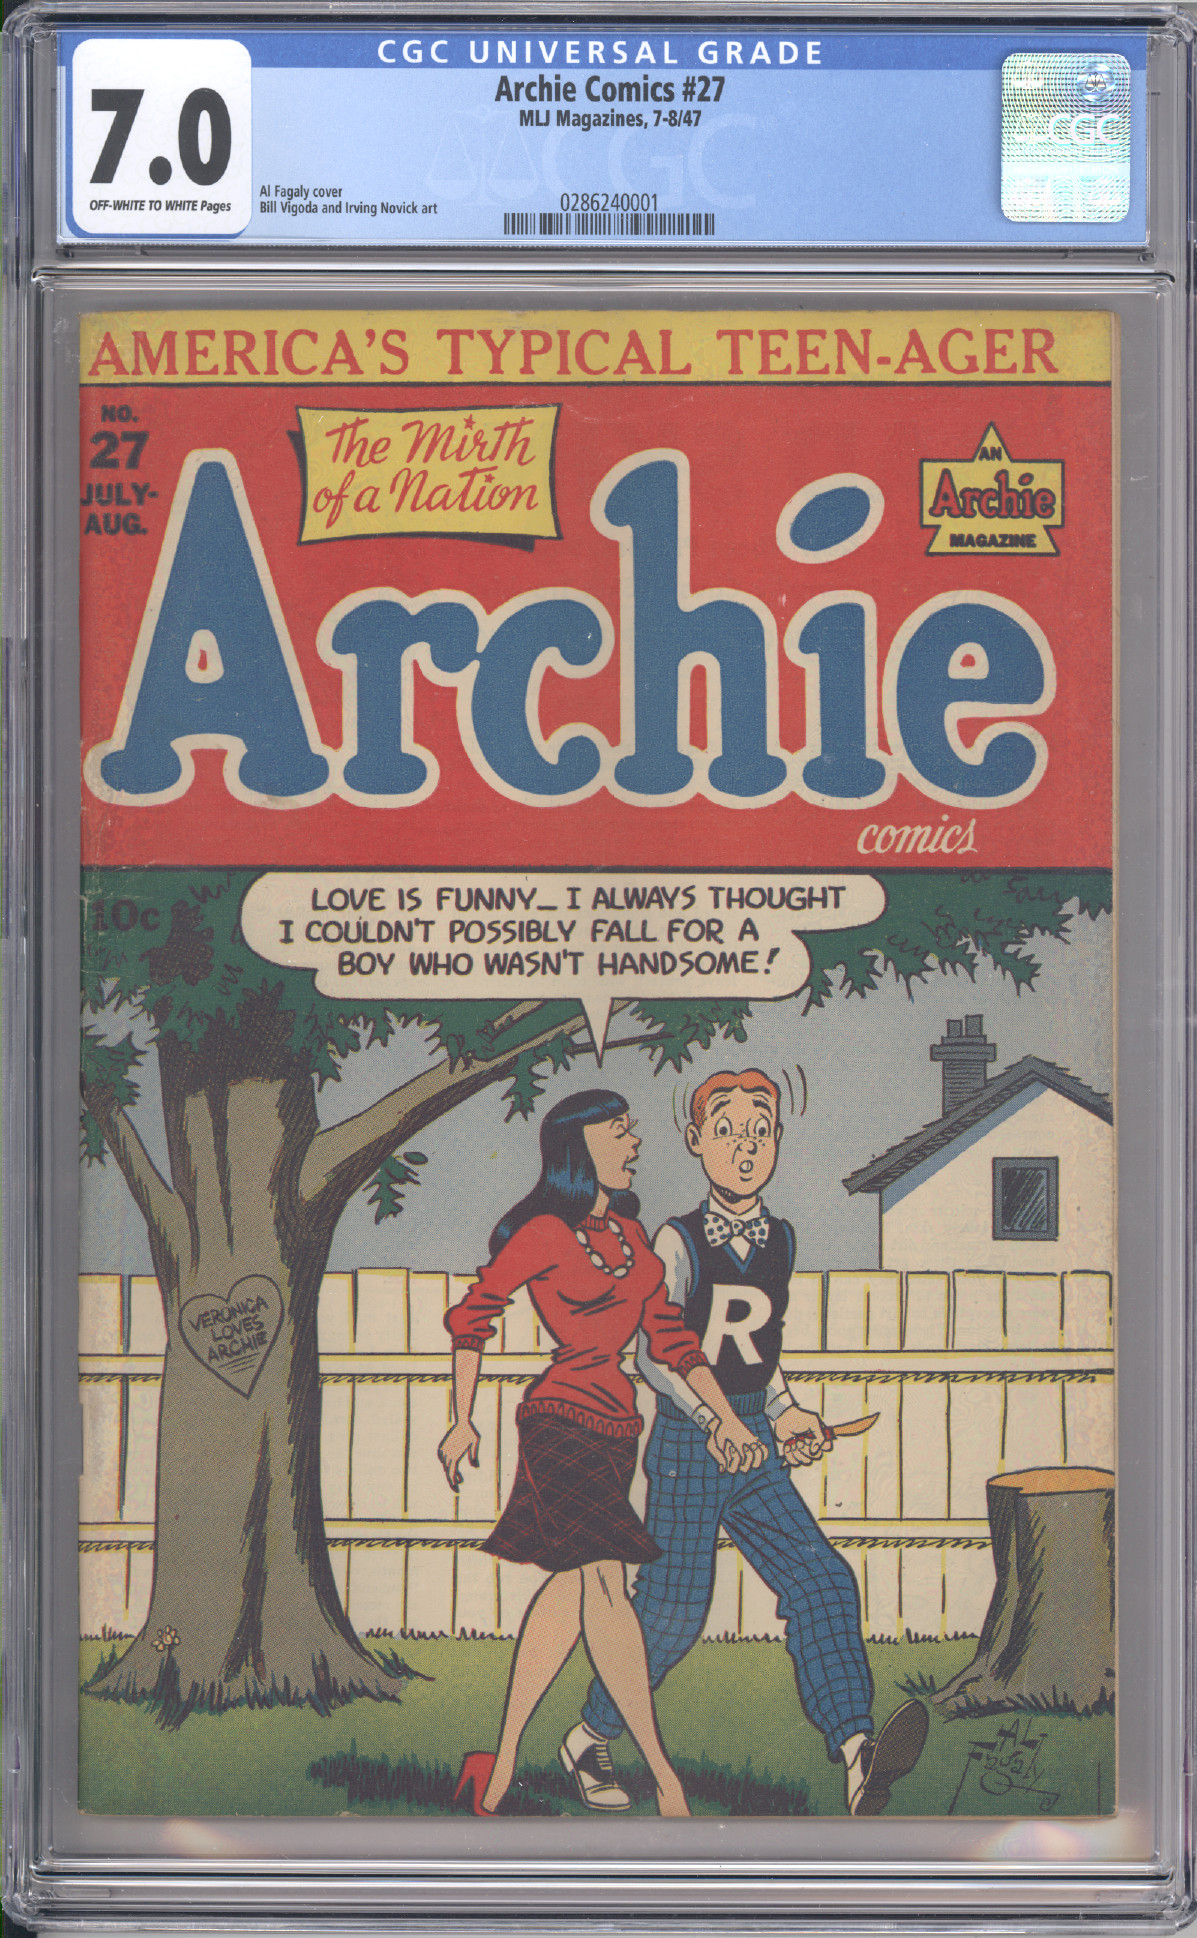 Archie Comics #27 front